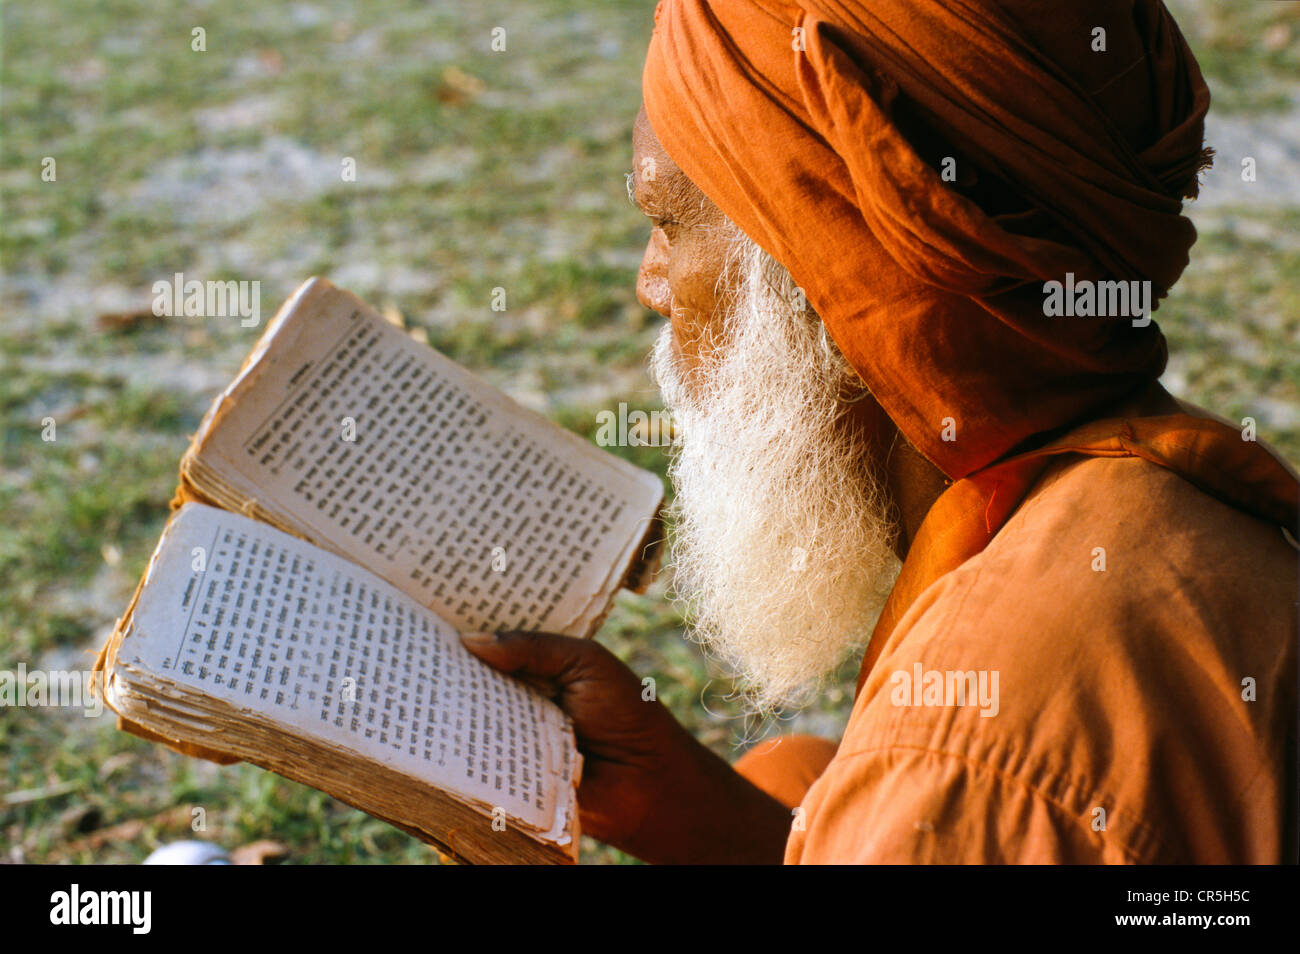 Sadhu reading the holy scriptures, Haridwar, Uttarakhand, formerly Uttaranchal, India, Asia Stock Photo